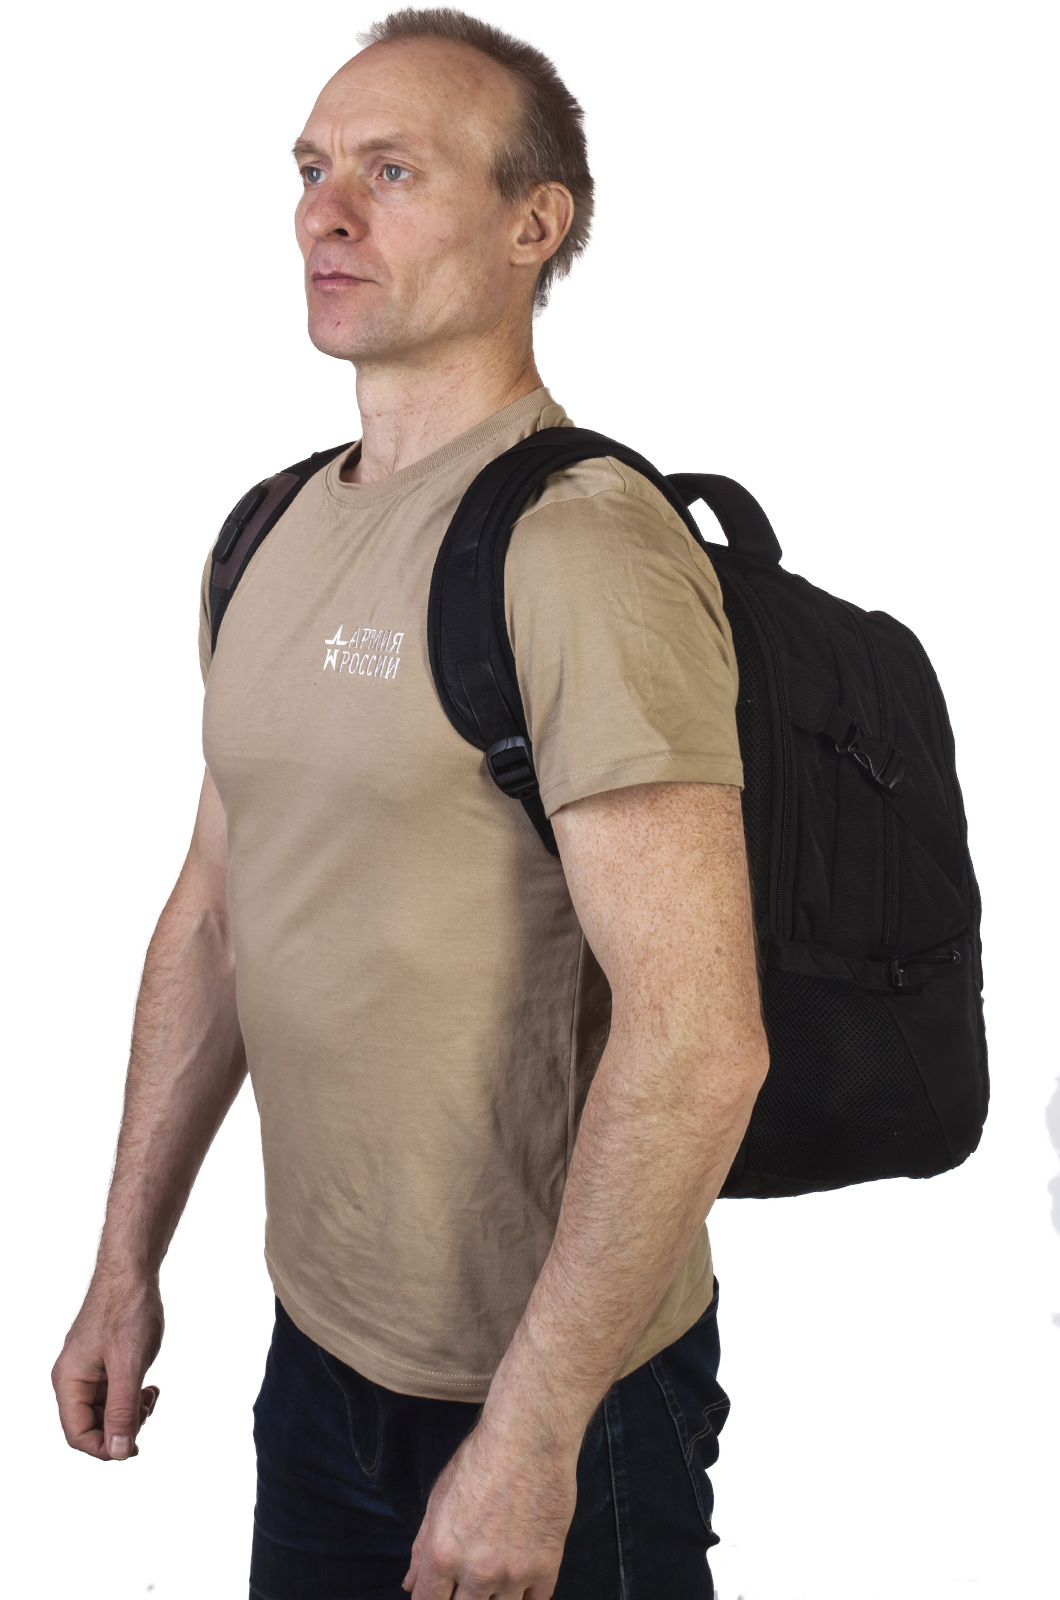 Универсальный черный рюкзак с нашивкой ОПЛОТ Спецназ (29 л) 